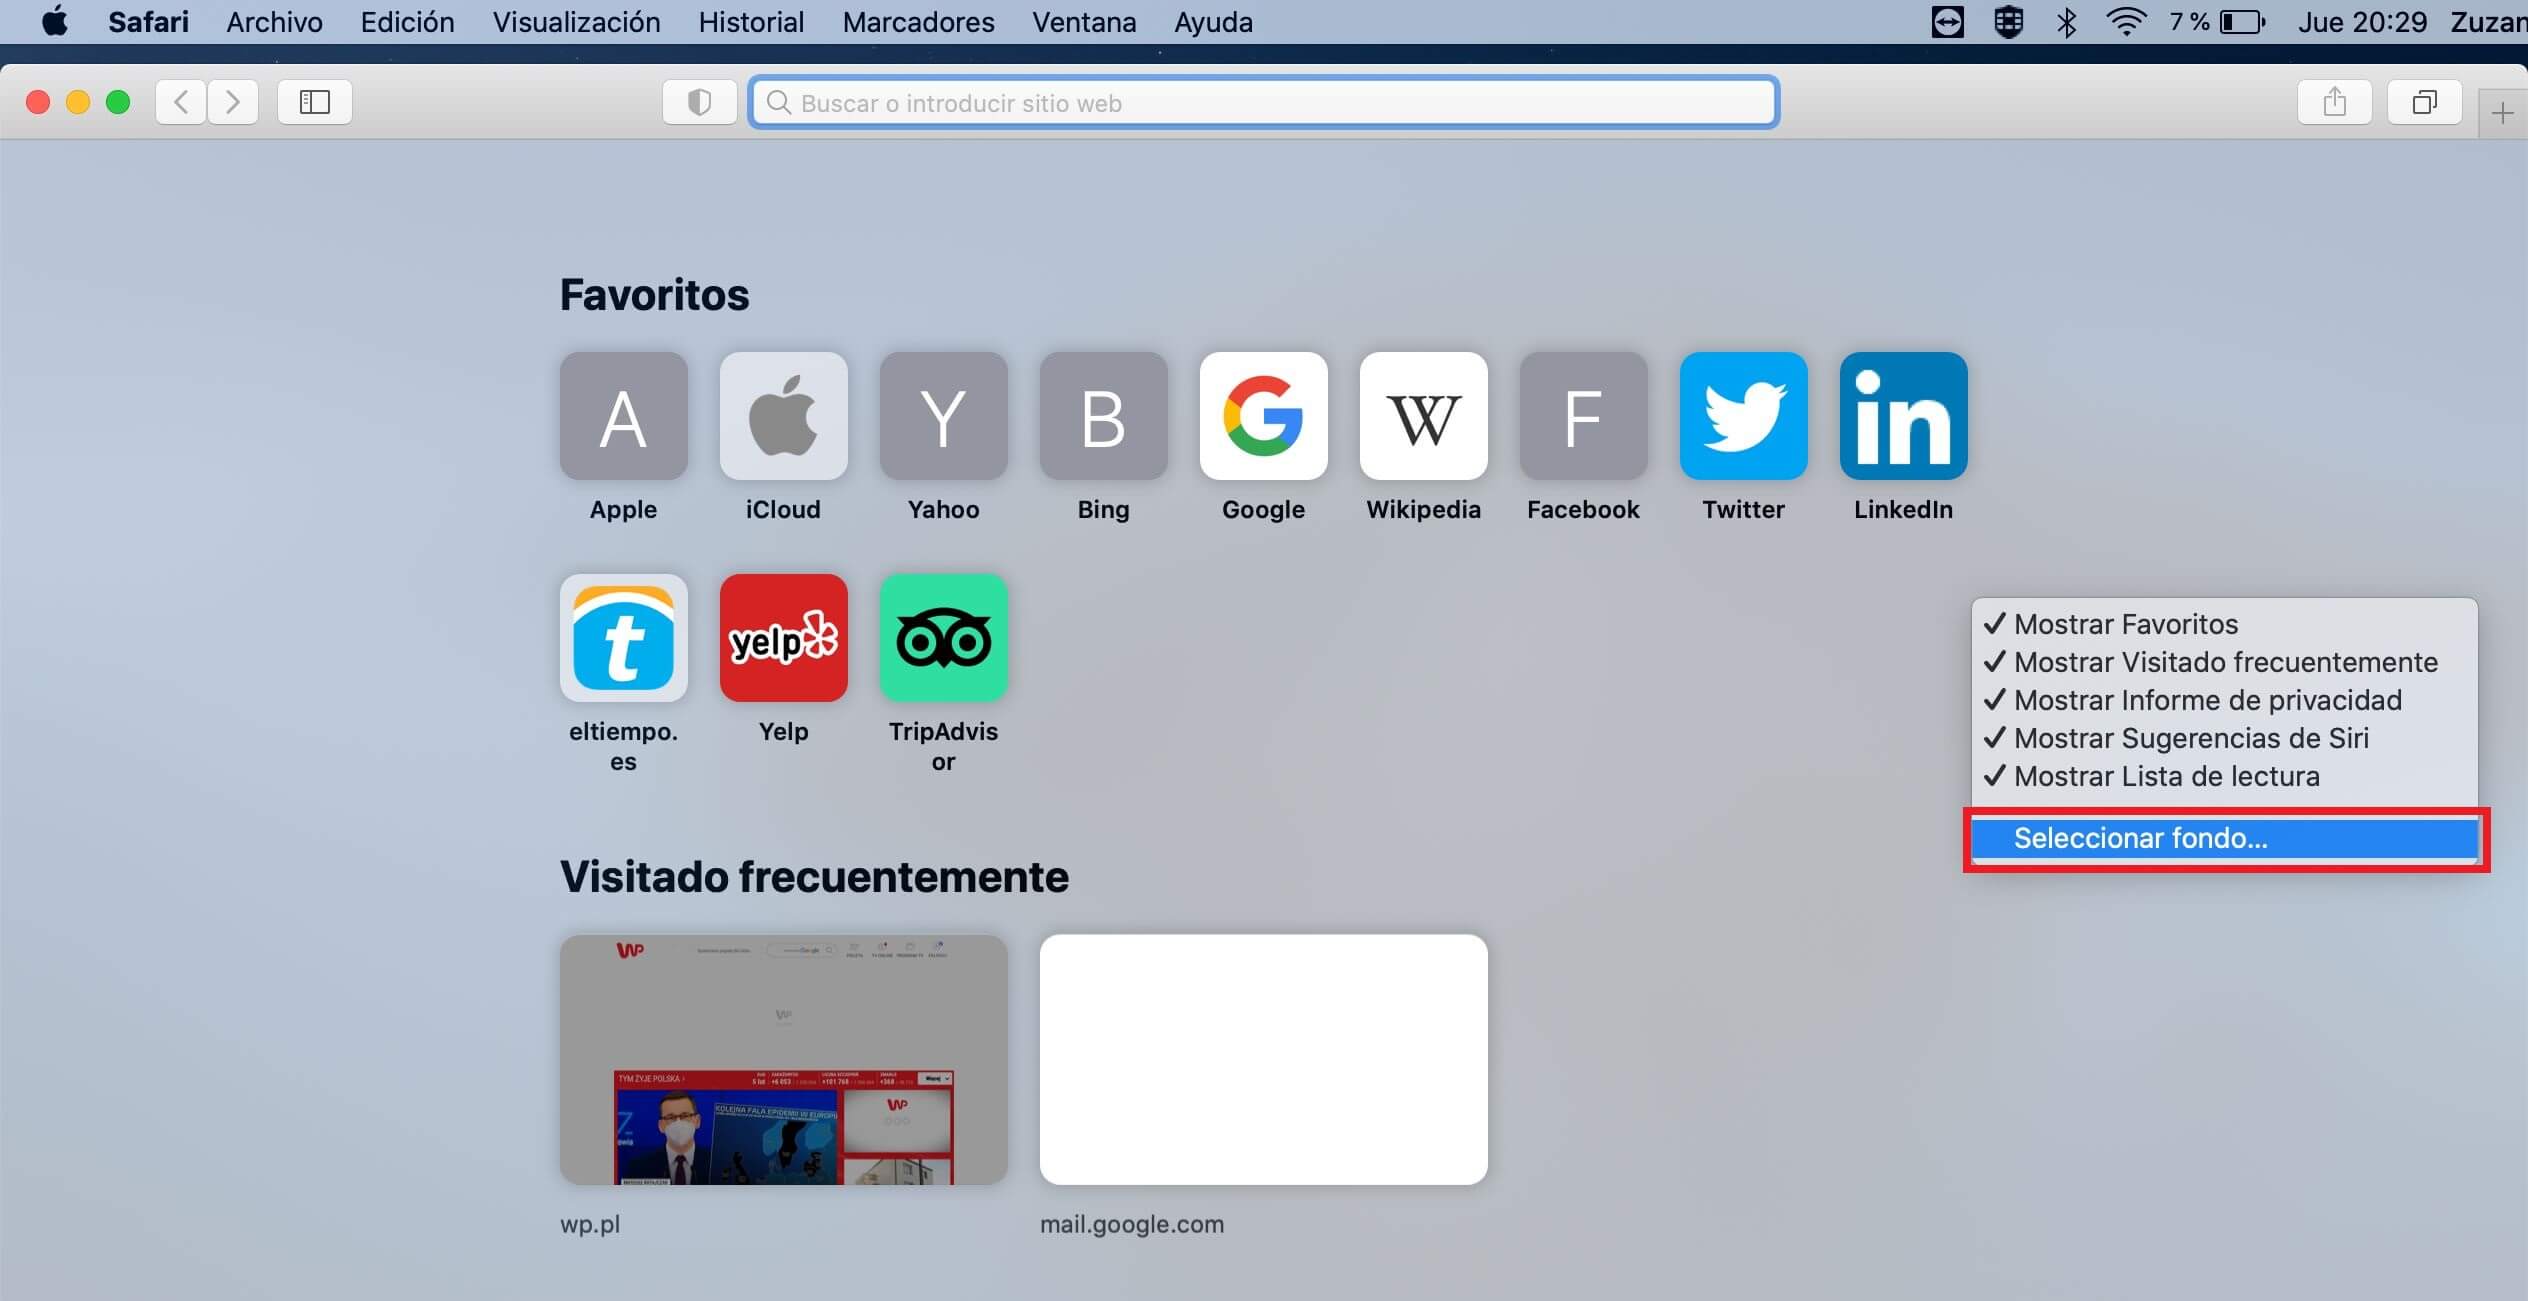 como cambiar el fondo del navegador web safari en mac